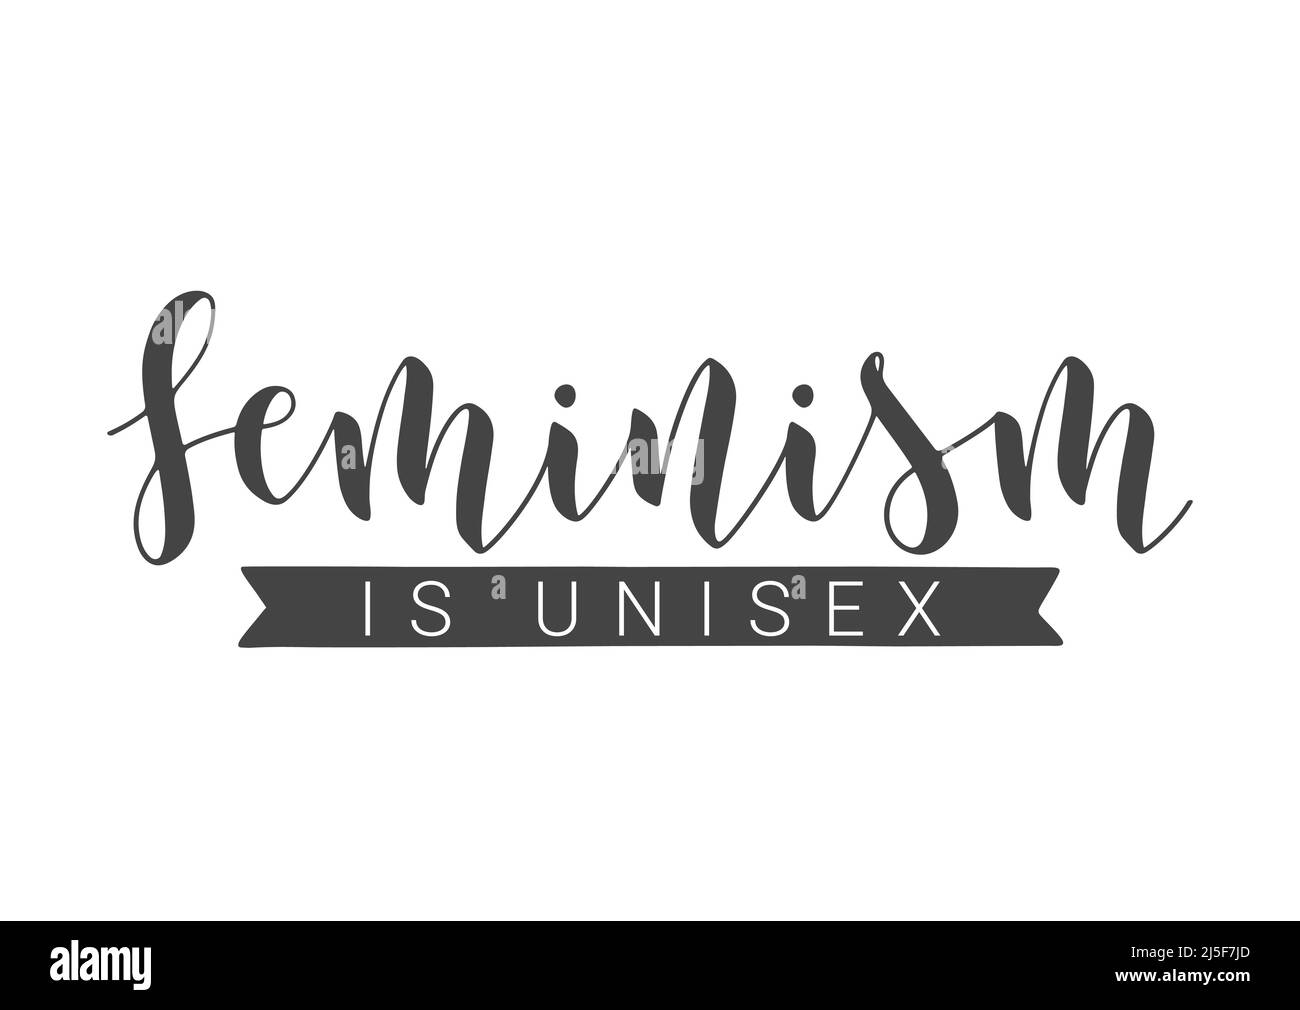 Vektorgrafik. Die handschriftliche Beschriftung des Feminismus ist Unisex. Vorlage für Karte, Etikett, Postkarte, Poster, Aufkleber, Print- oder Web-Produkt. Stock Vektor